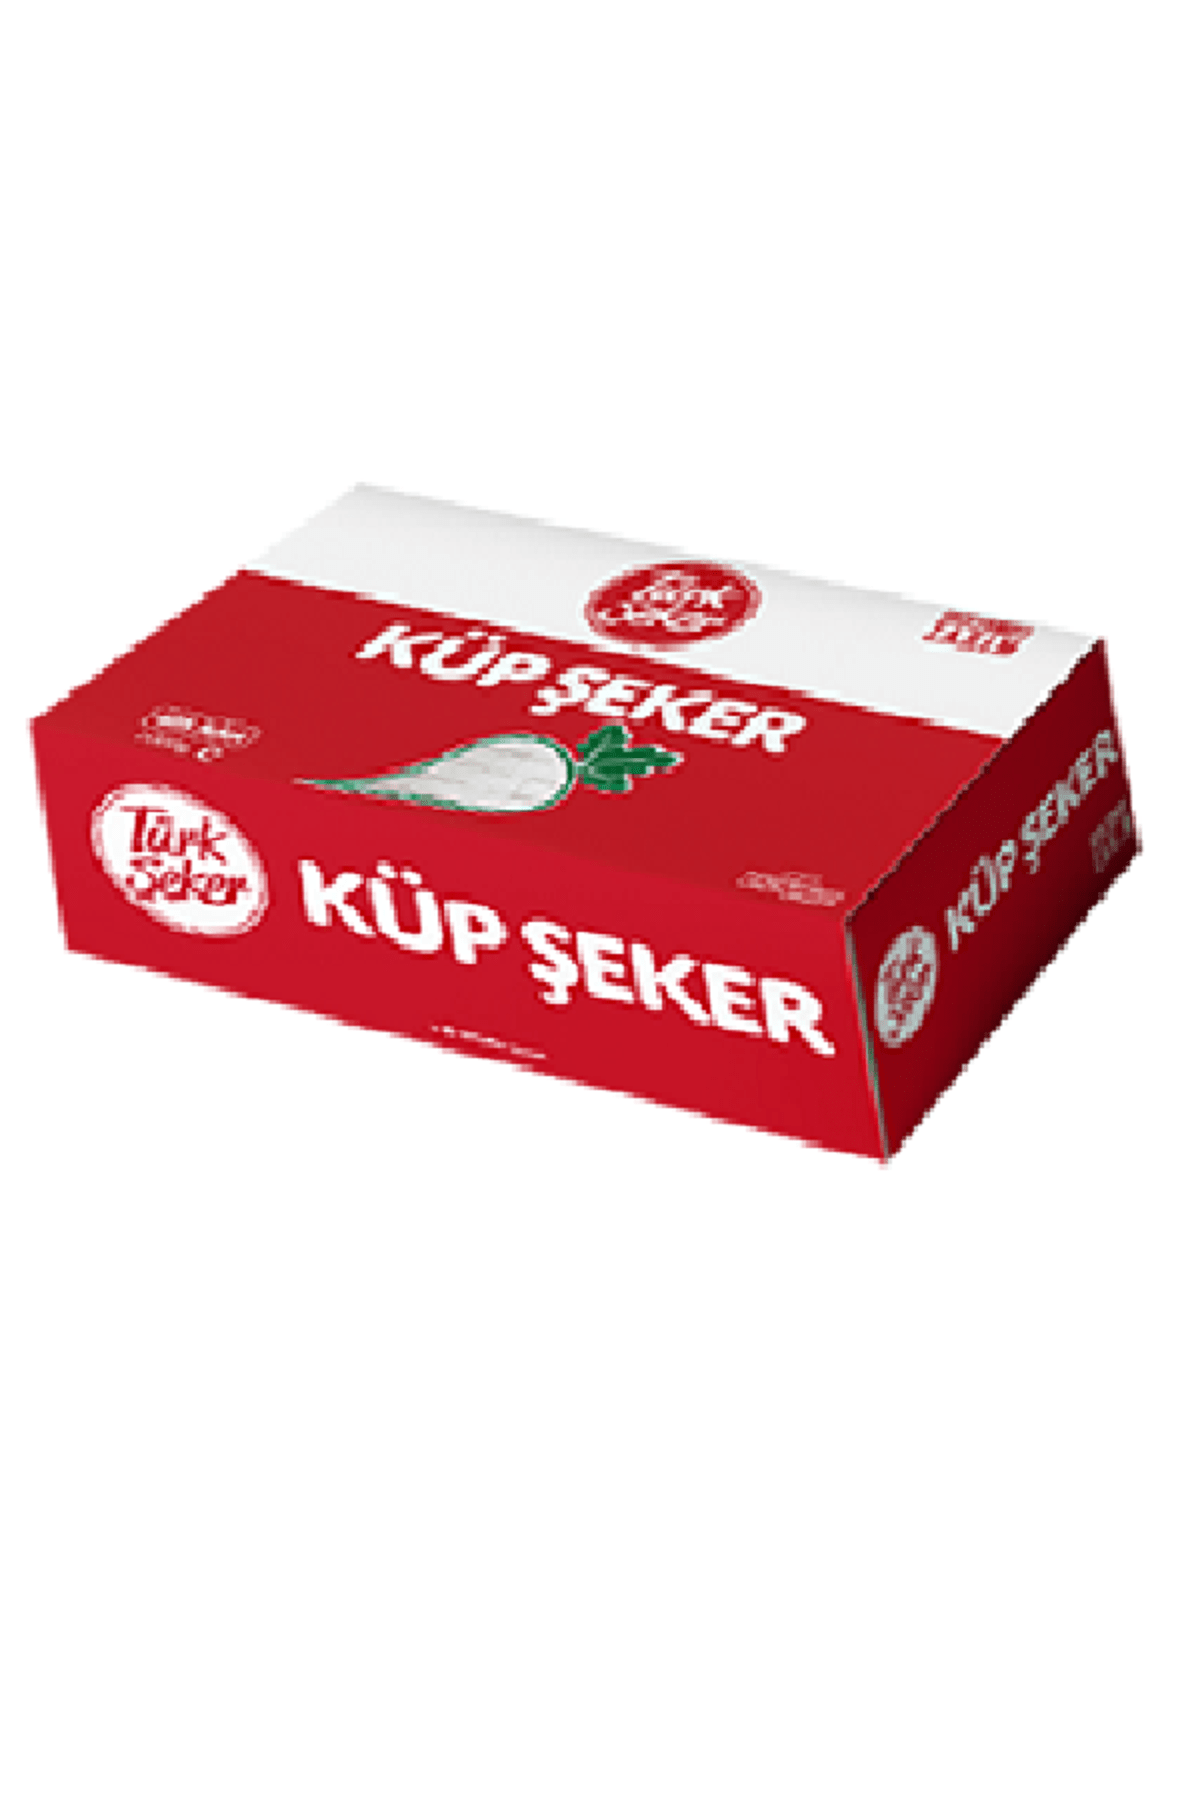 Türk Şeker Küp Şeker 1 kg